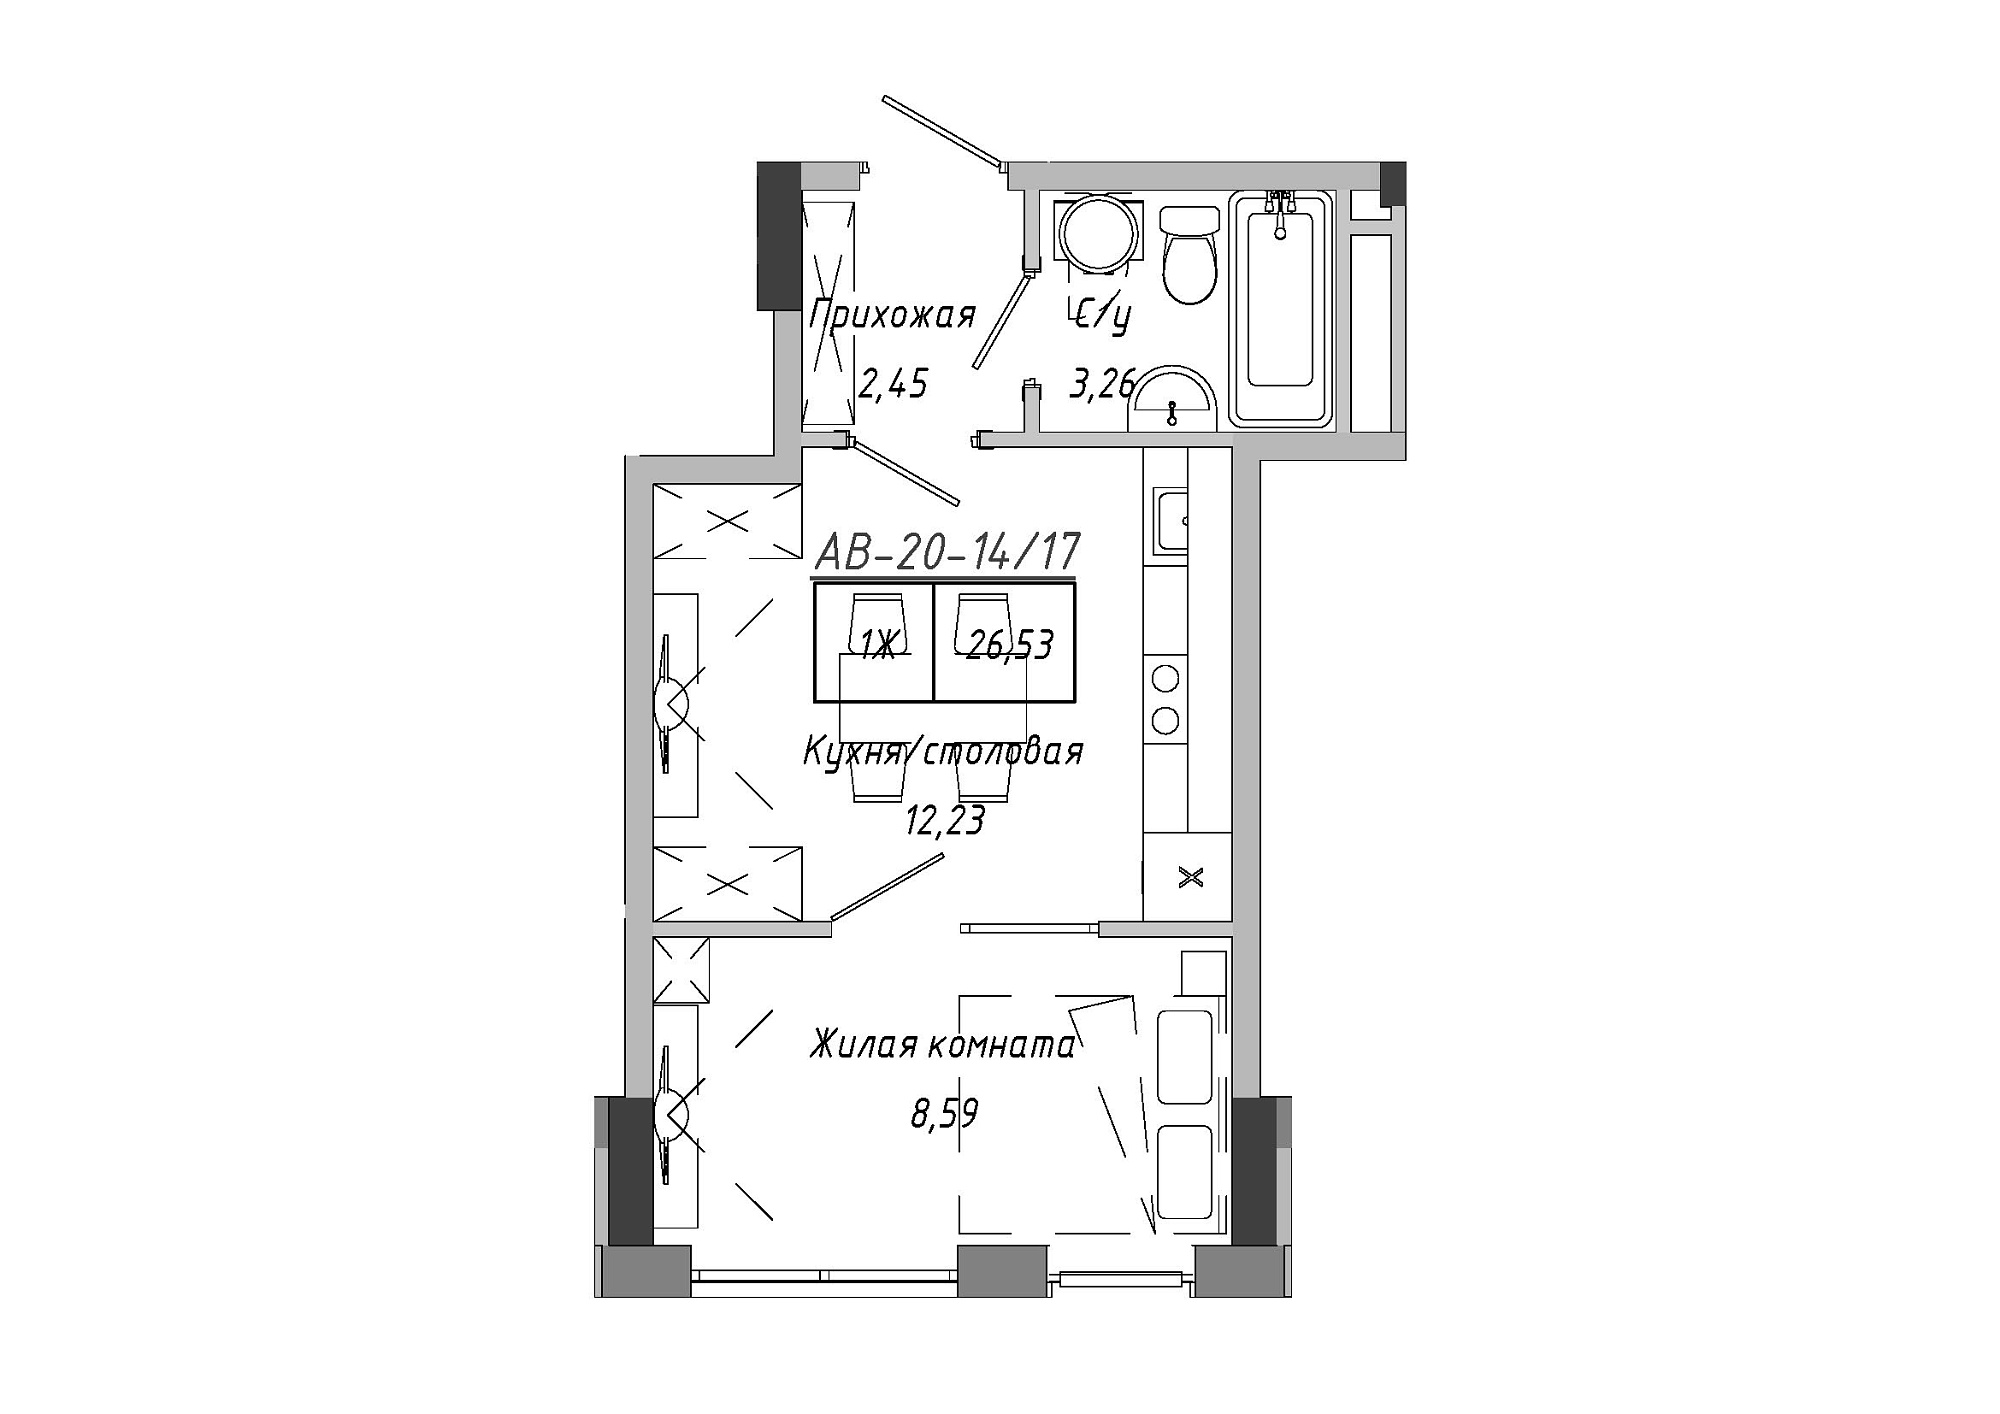 Планировка 1-к квартира площей 26.53м2, AB-20-14/00117.